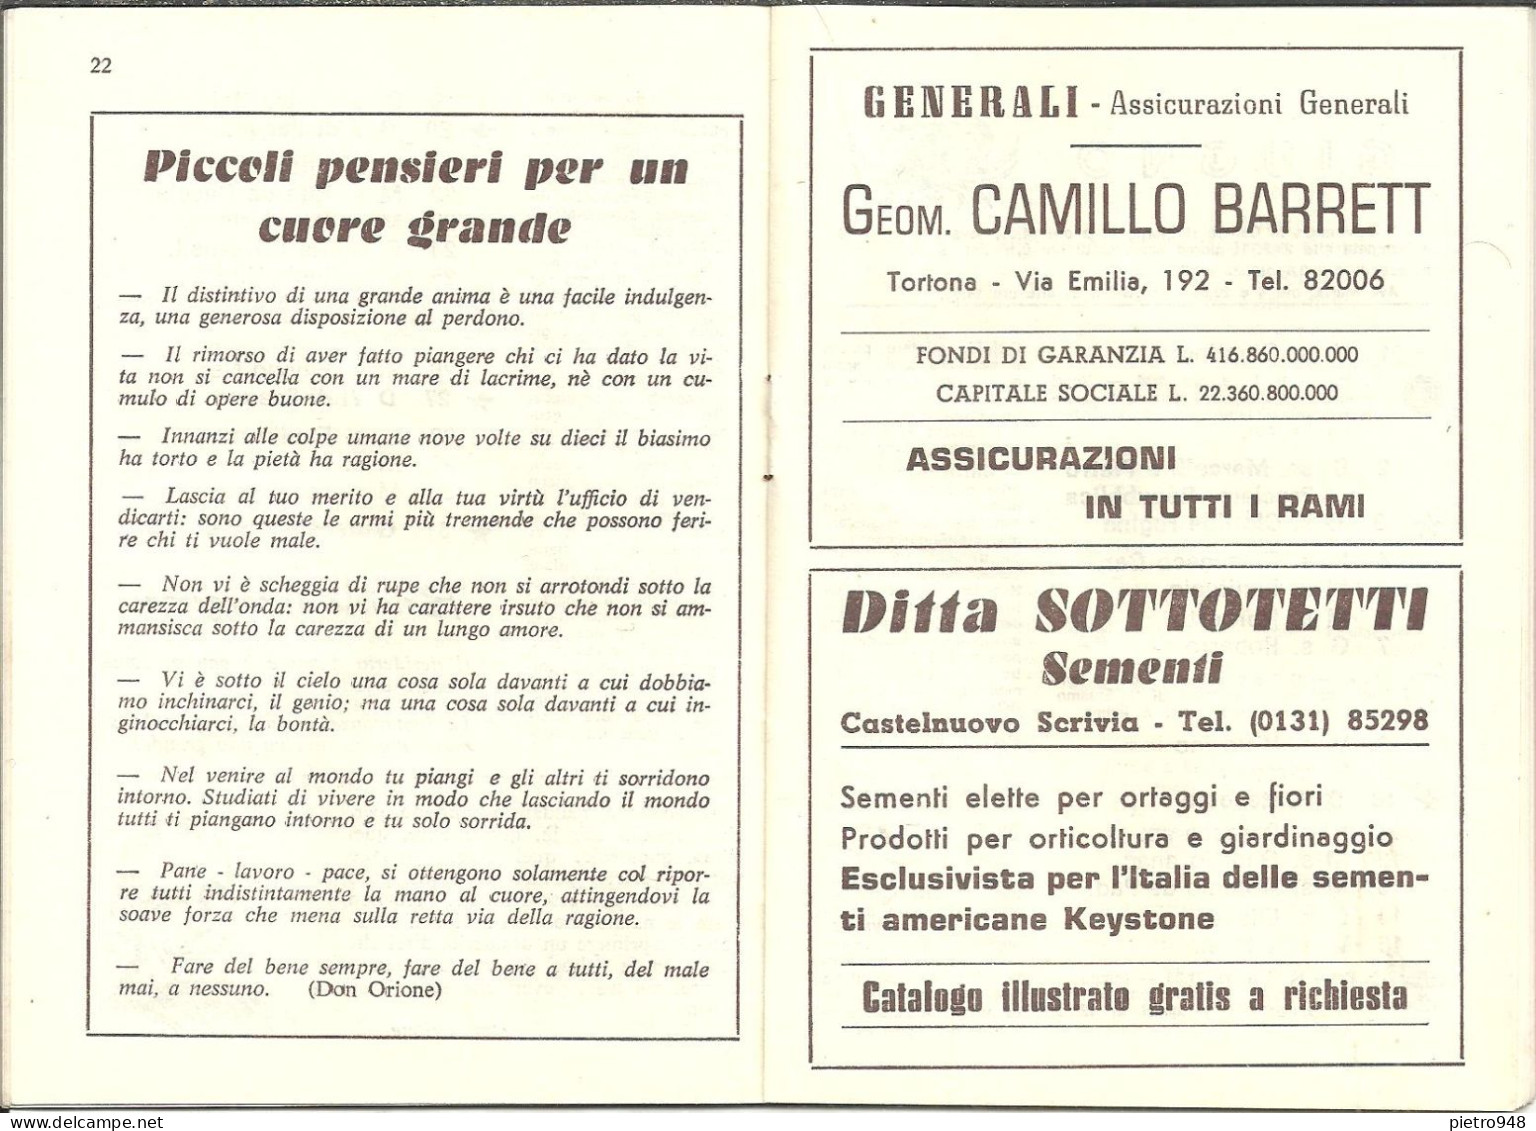 Libro (Libretto) Religioso "Il Romito Dell'Appennino 1973", Ed. Scuola Tipografica S. Giuseppe-Opera Don Orione Tortona - Religión/Espiritualismo